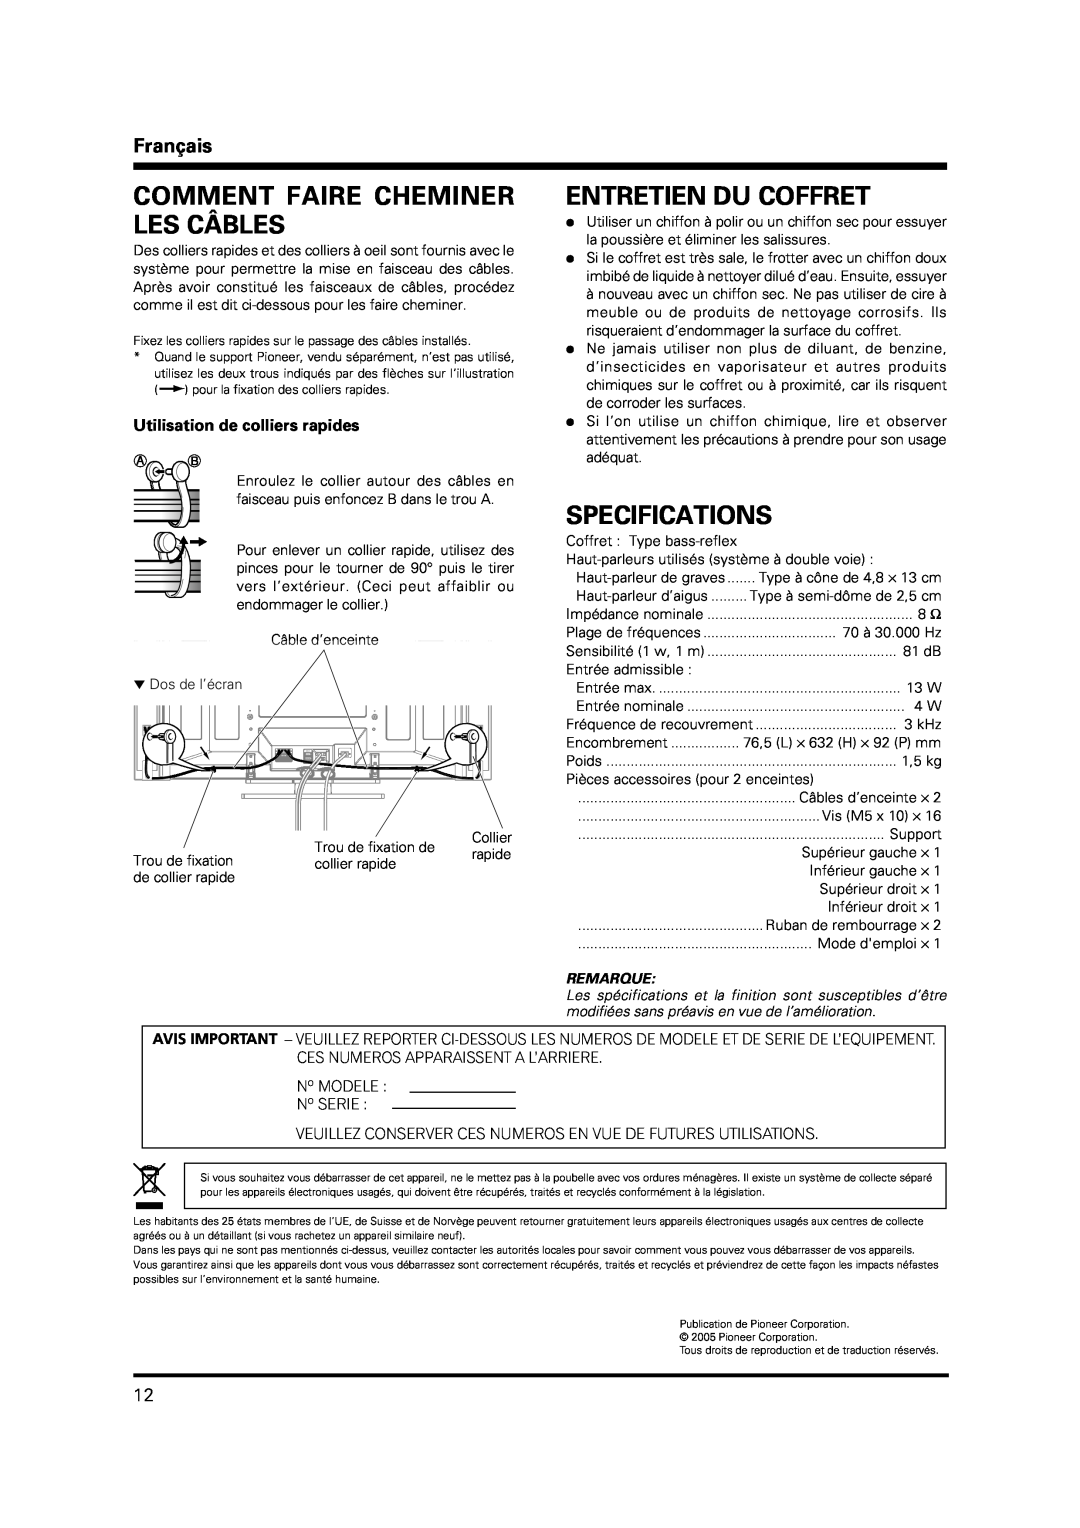 Pioneer PDP-S37 manual Comment Faire Cheminer Les Câbles, Entretien Du Coffret, Specifications, Français, Remarque 